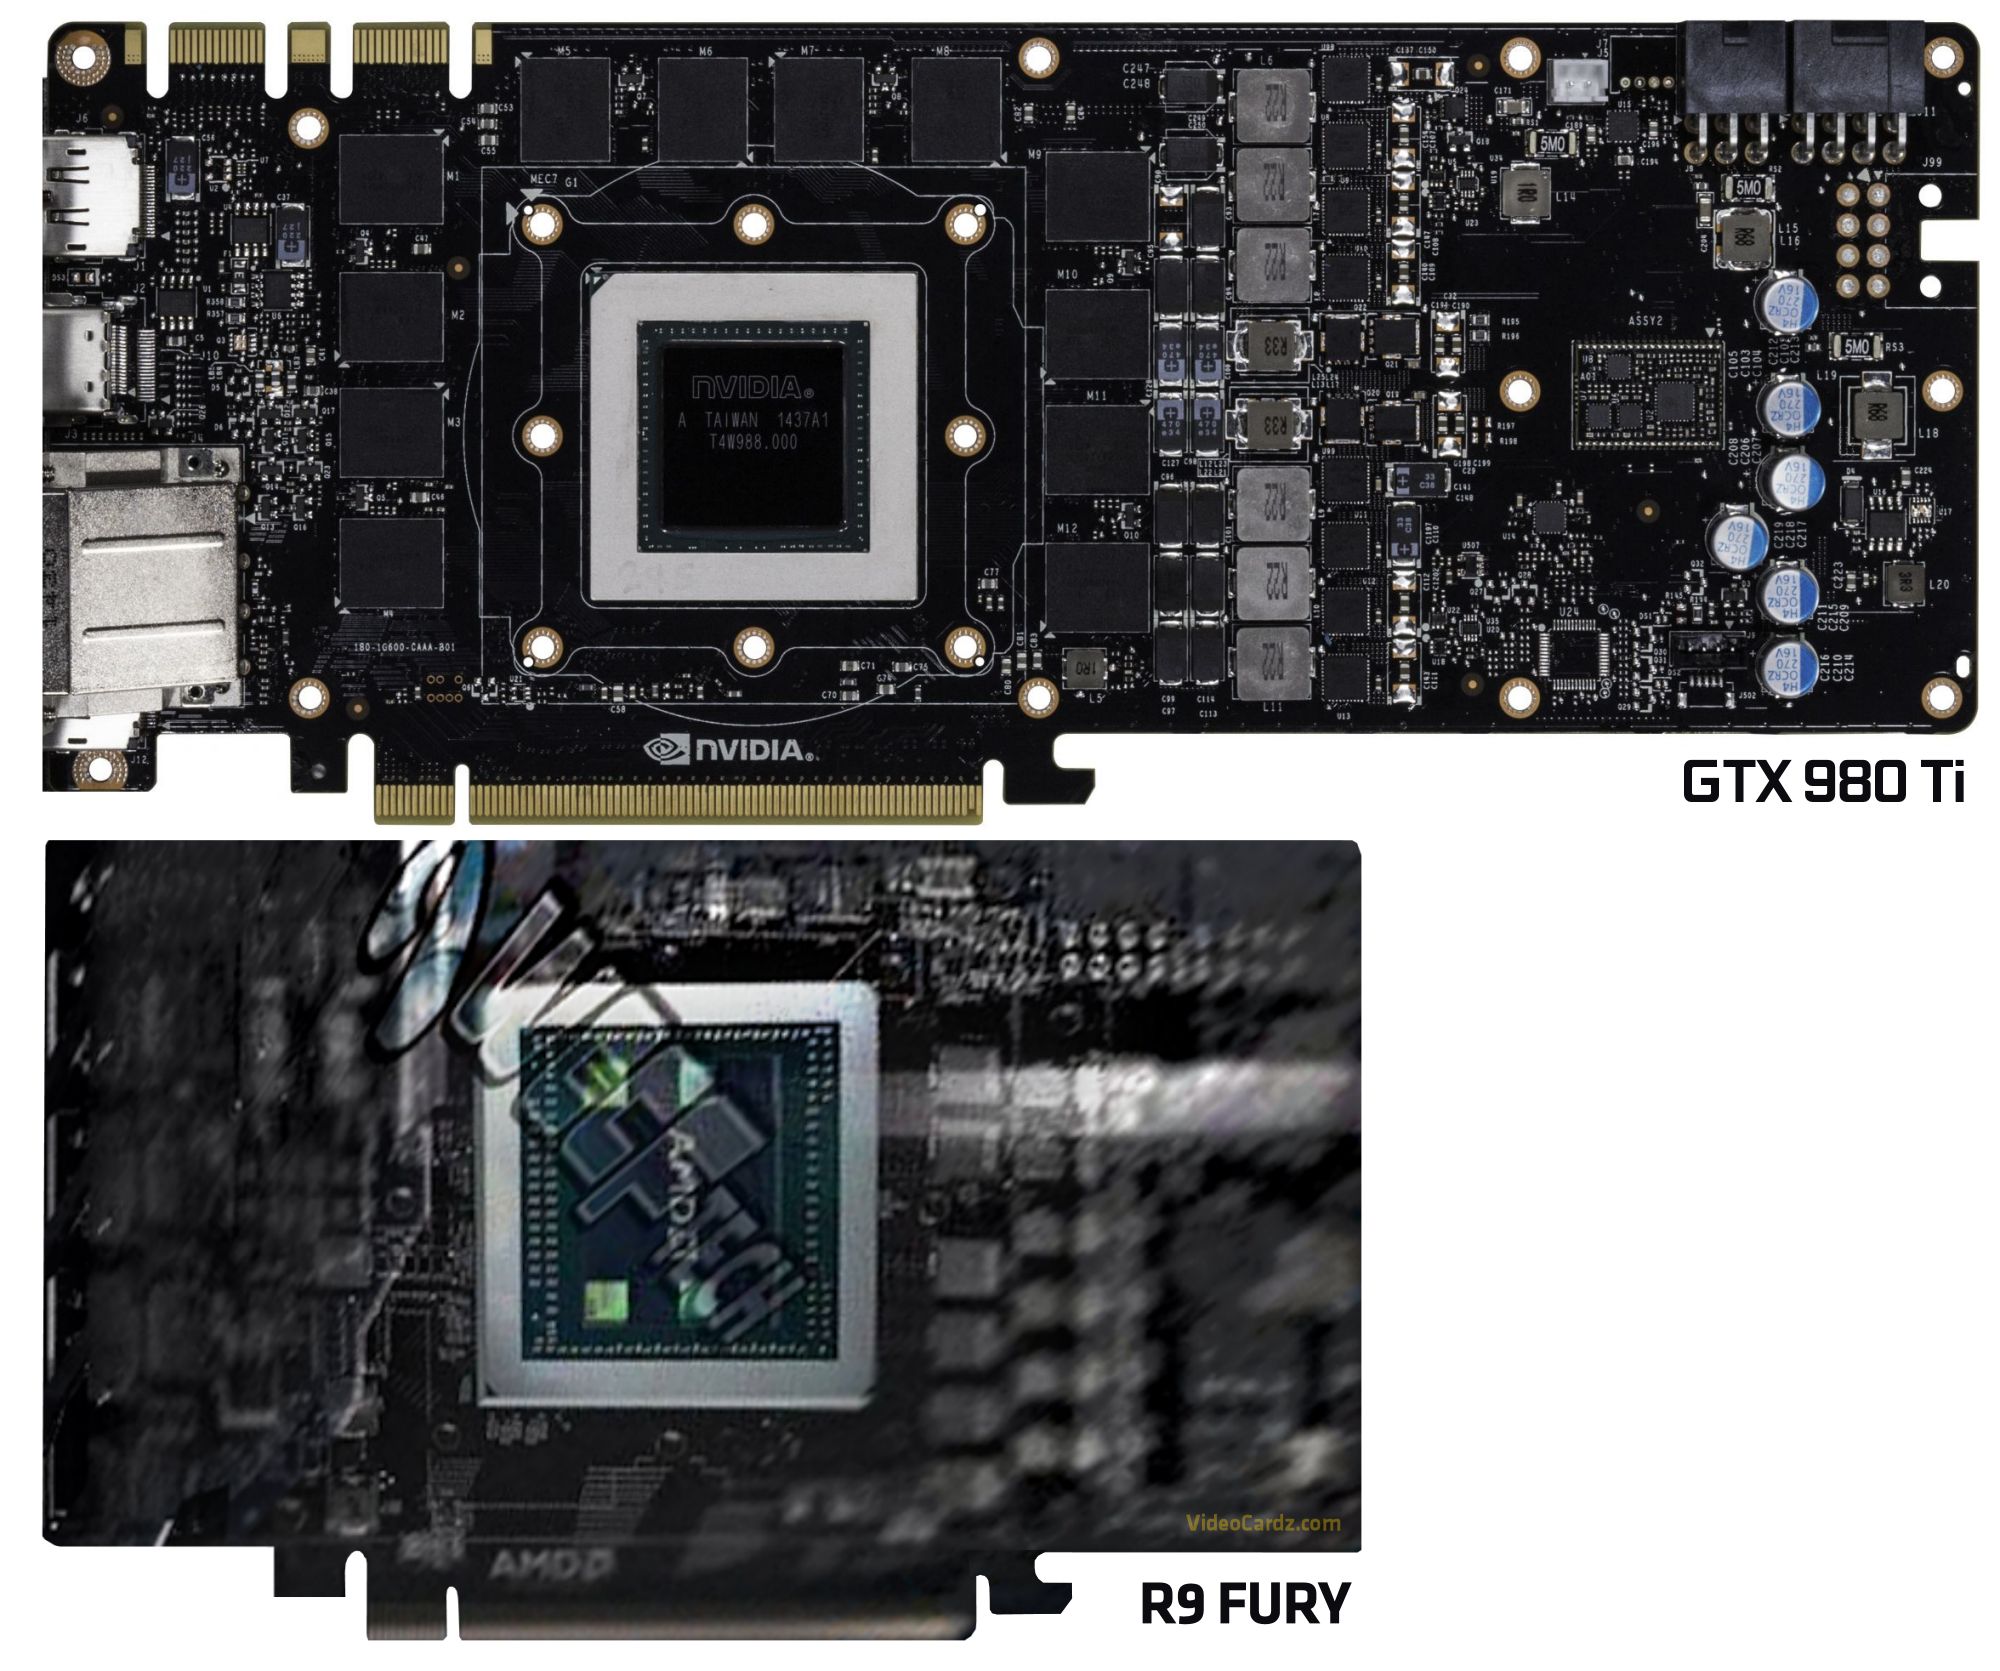 AMD-R9-FURY-vs-GTX-980-Ti-PCB-comparison